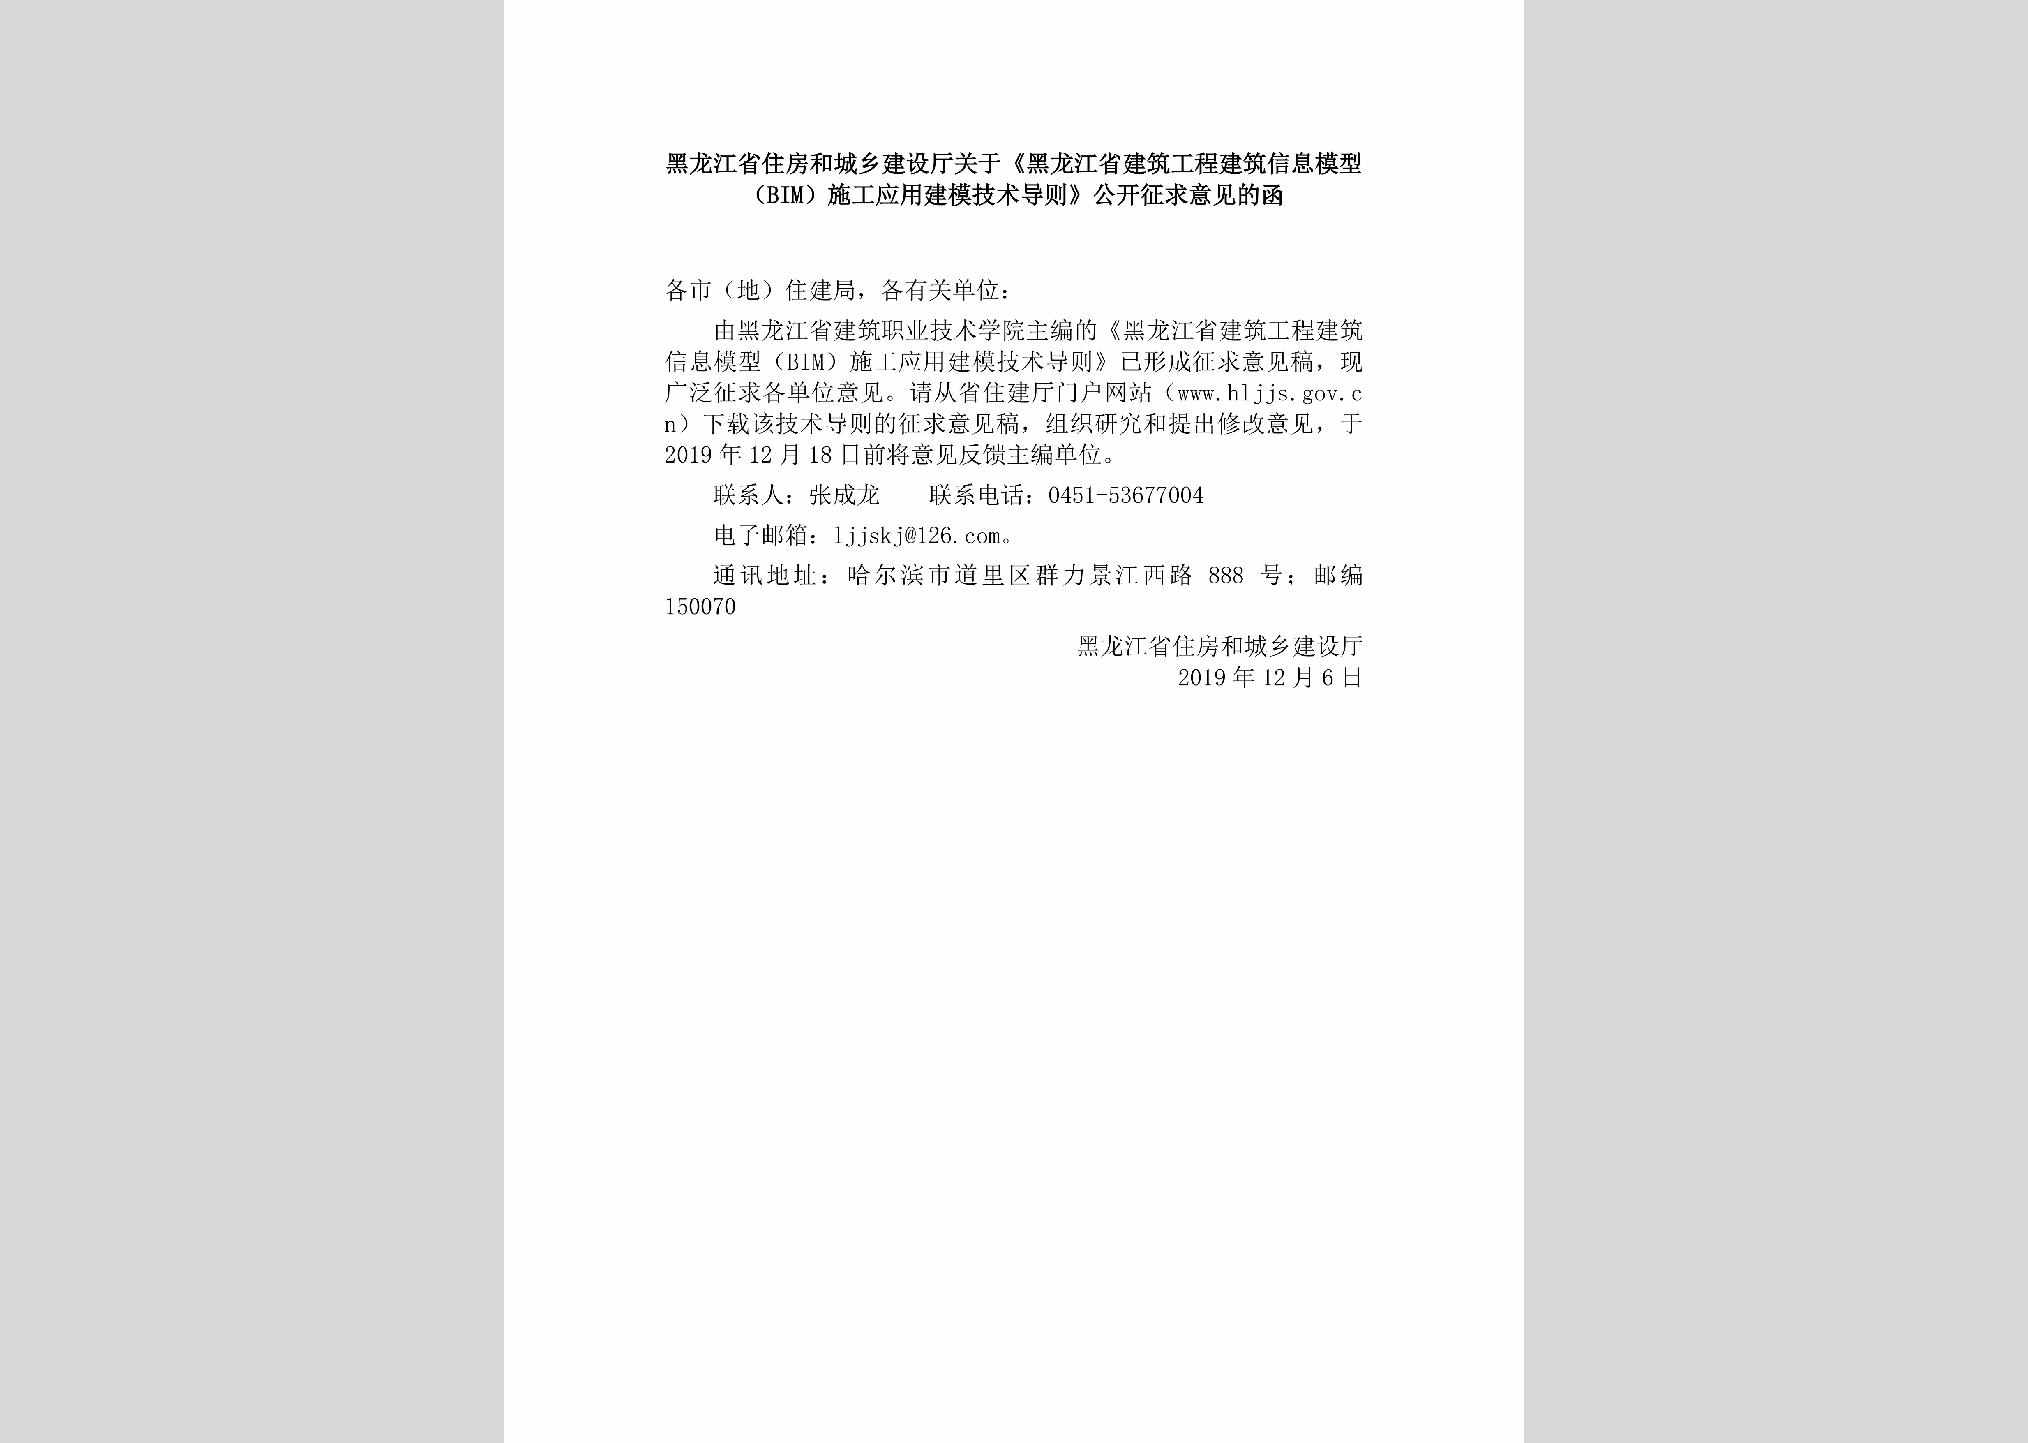 HLJ-YYJMJSDZ-2019：黑龙江省住房和城乡建设厅关于《黑龙江省建筑工程建筑信息模型（BIM）施工应用建模技术导则》公开征求意见的函